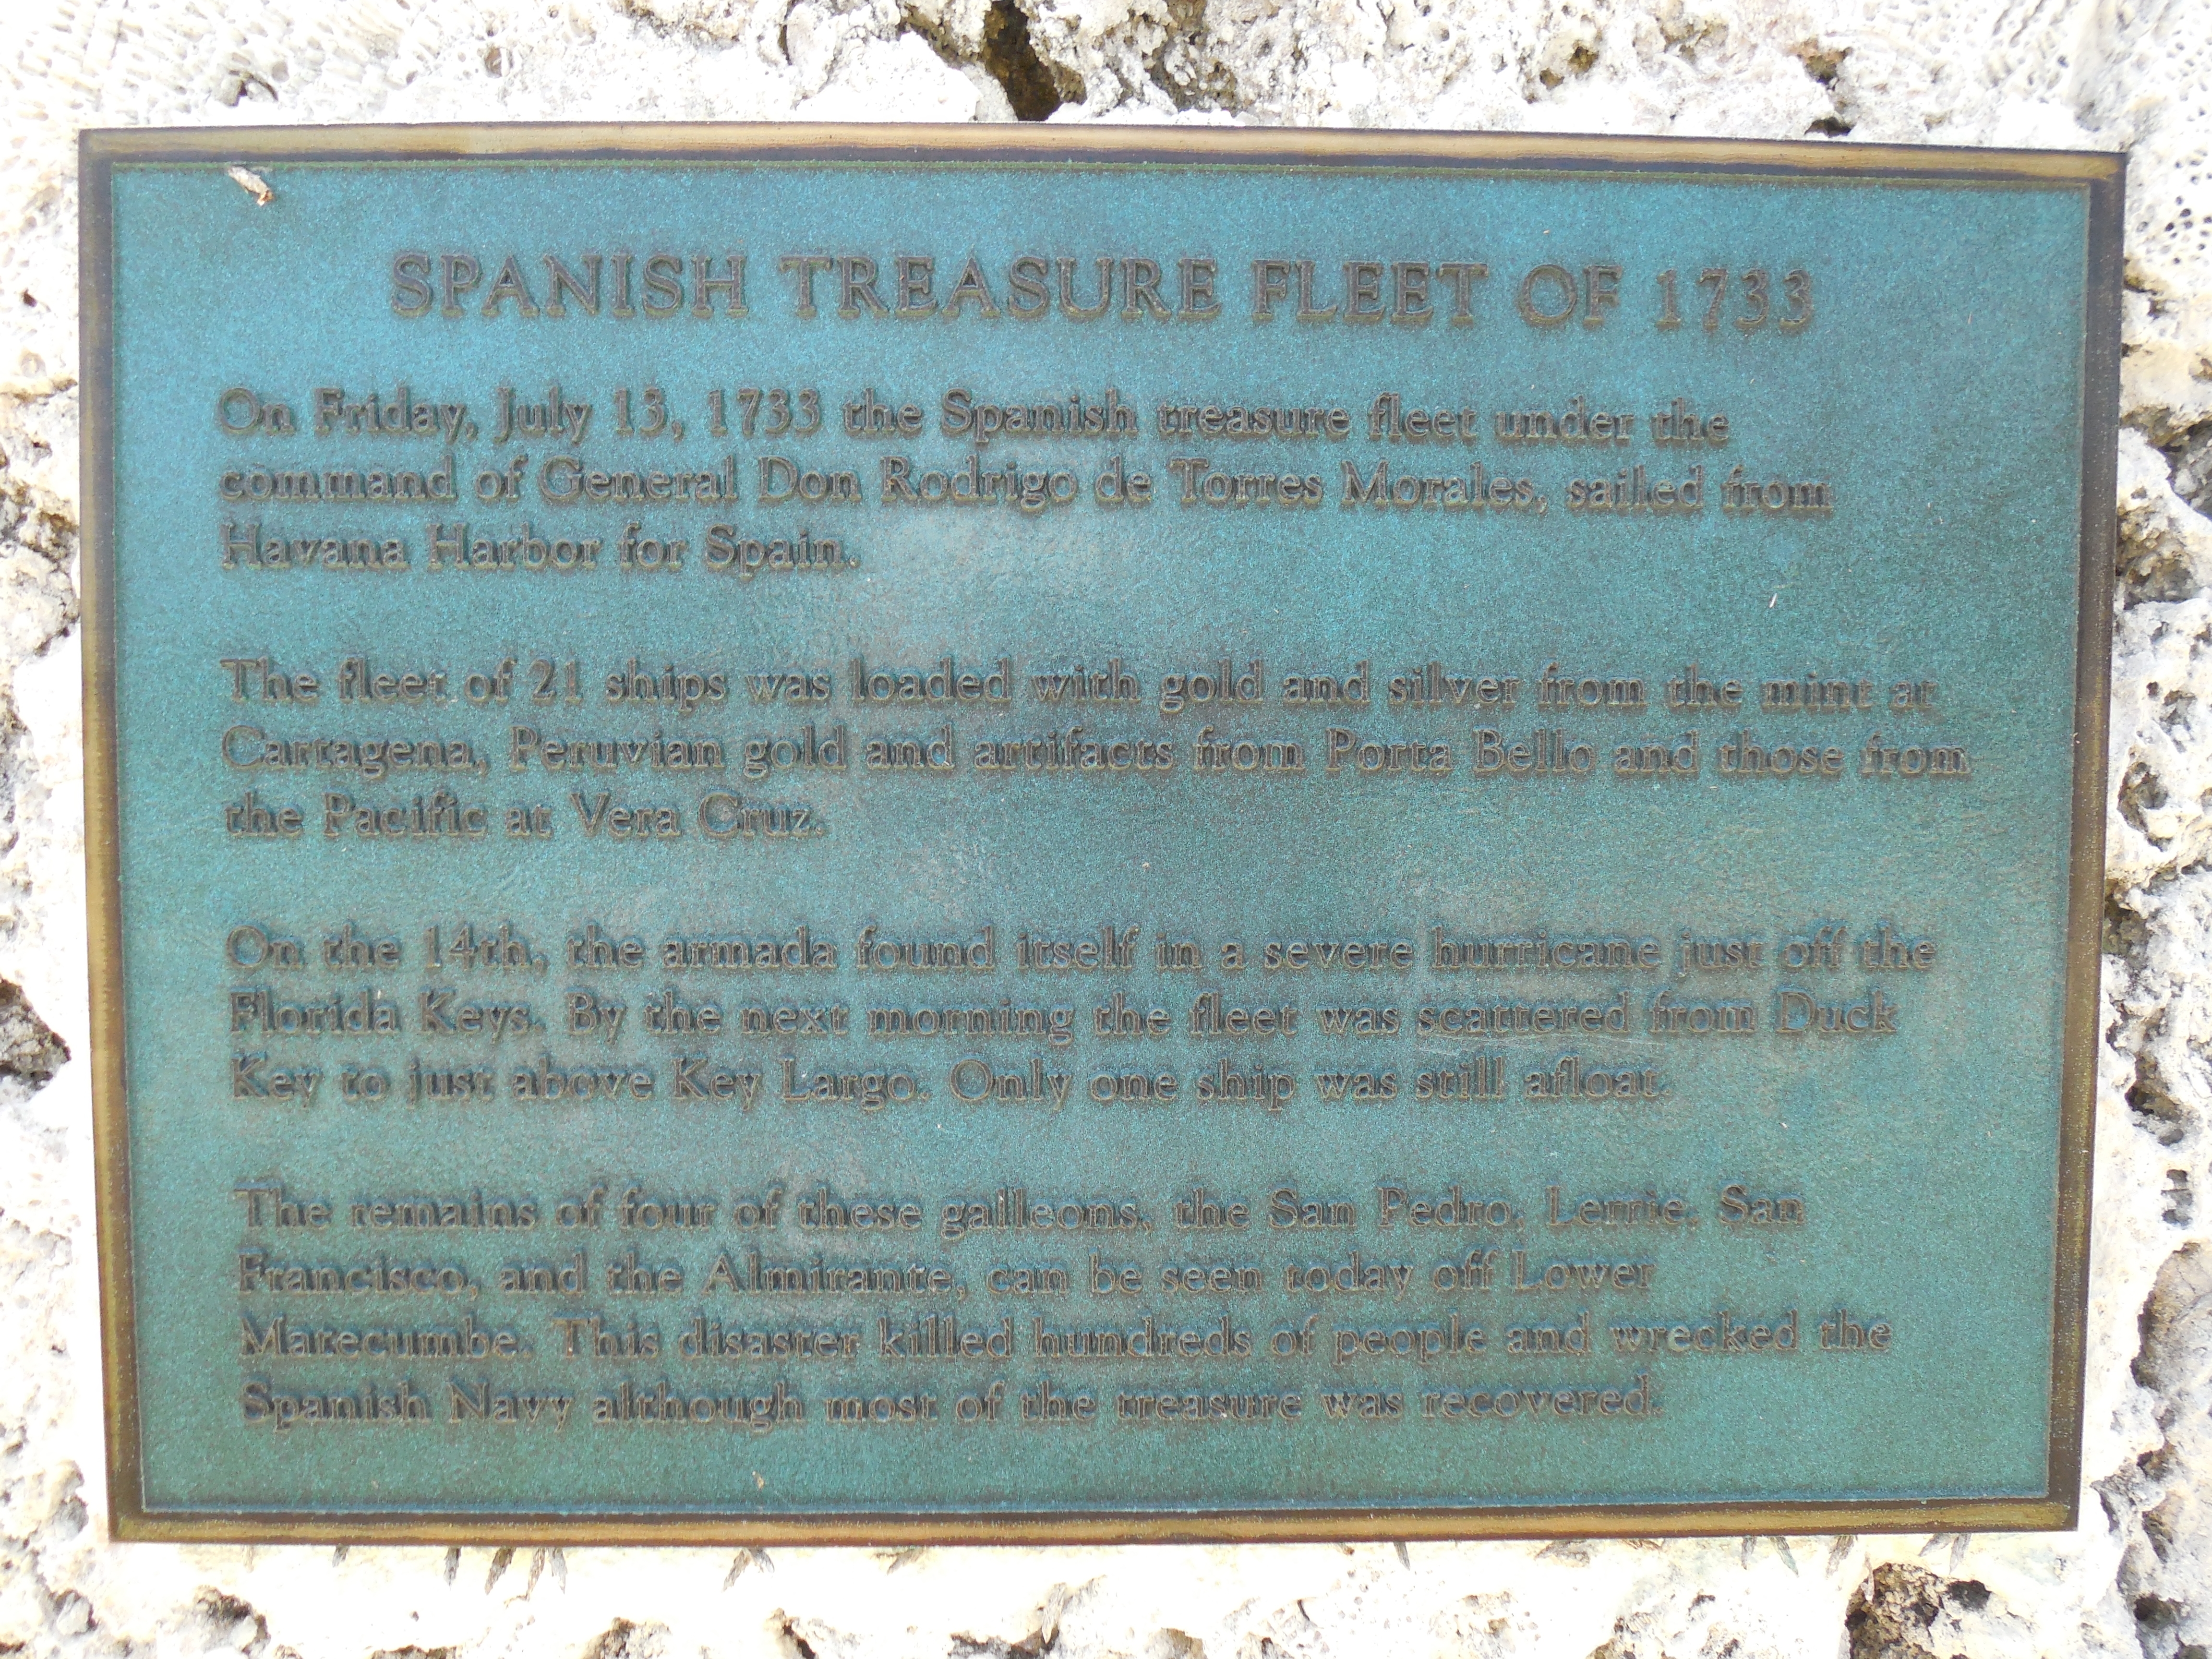 Spanish Treasure Fleet of 1733 Marker